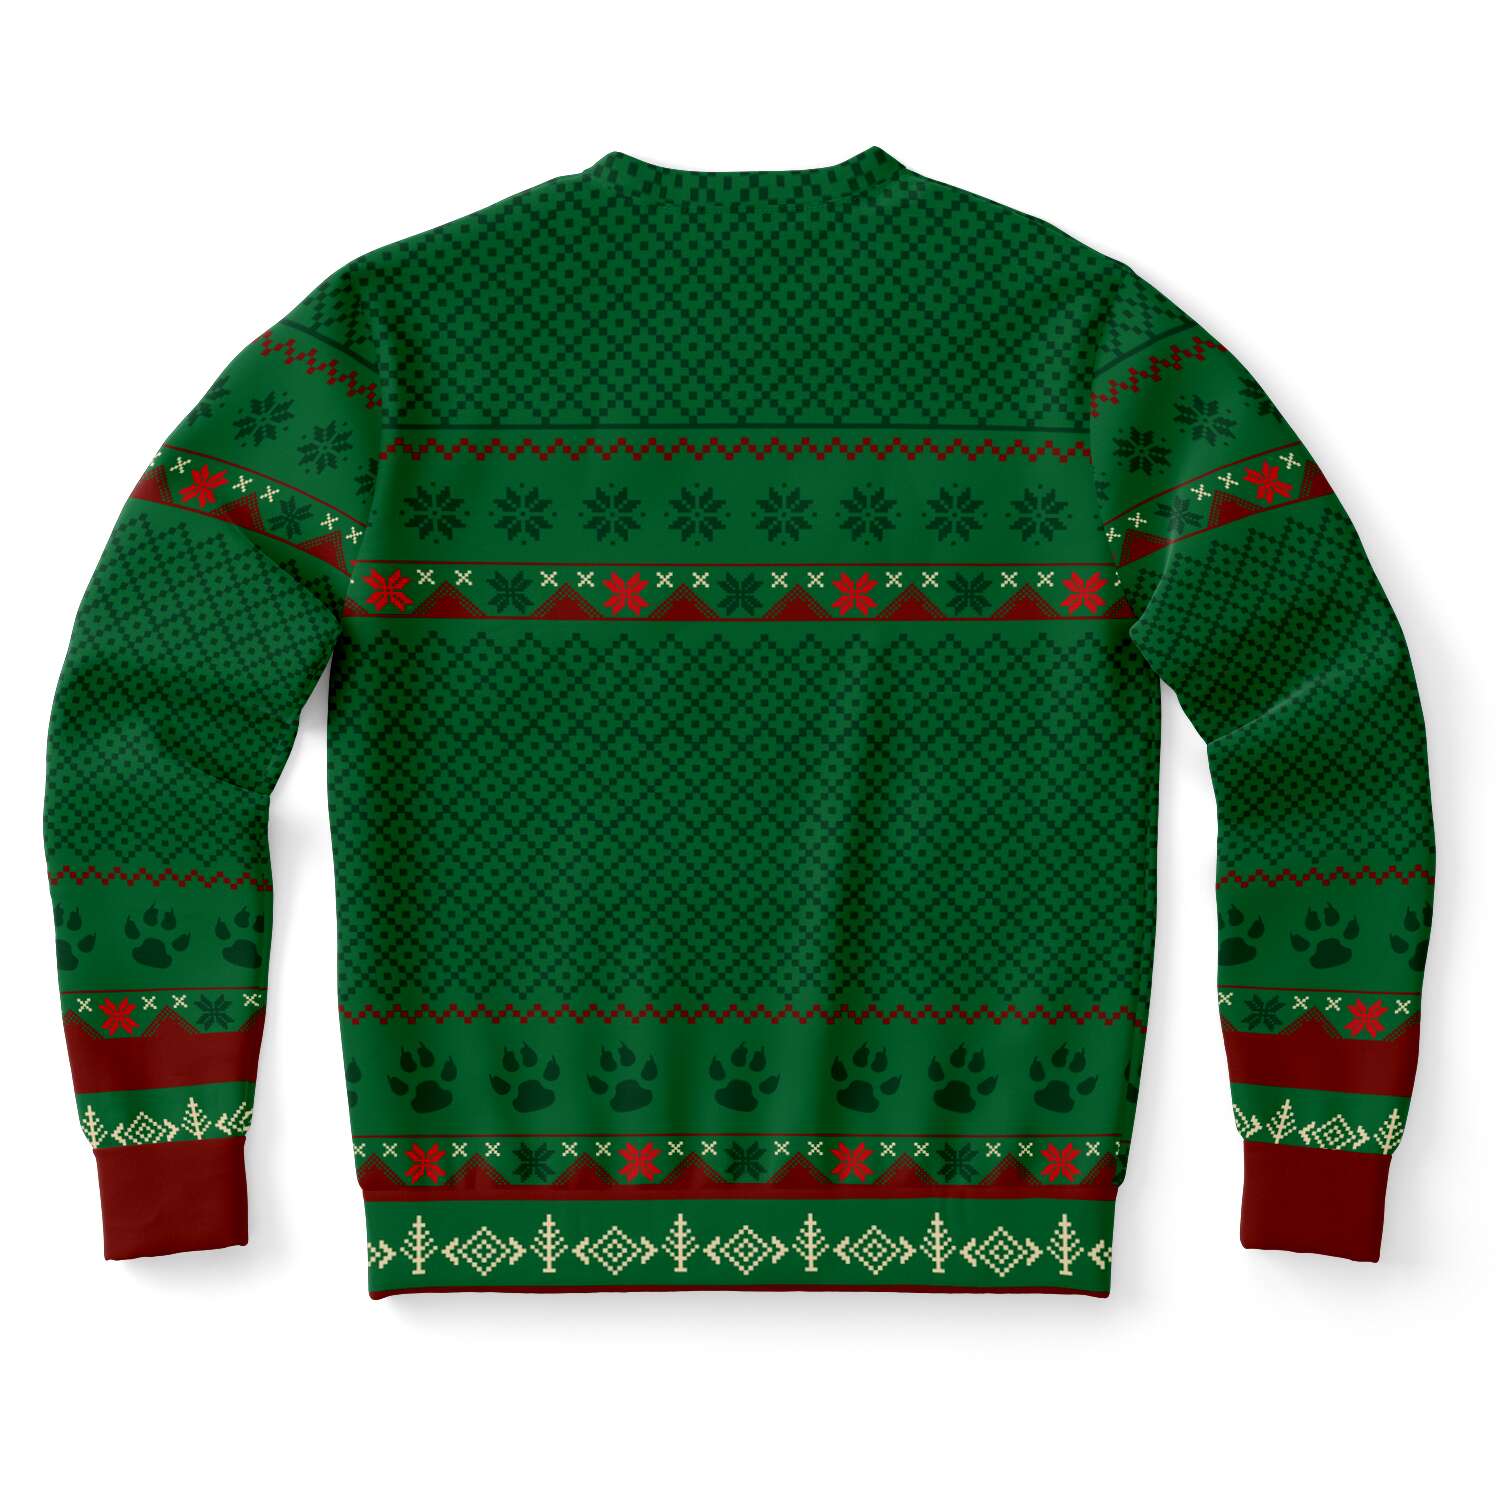 beagle feeliz navidog ugly christmas sweatshirt